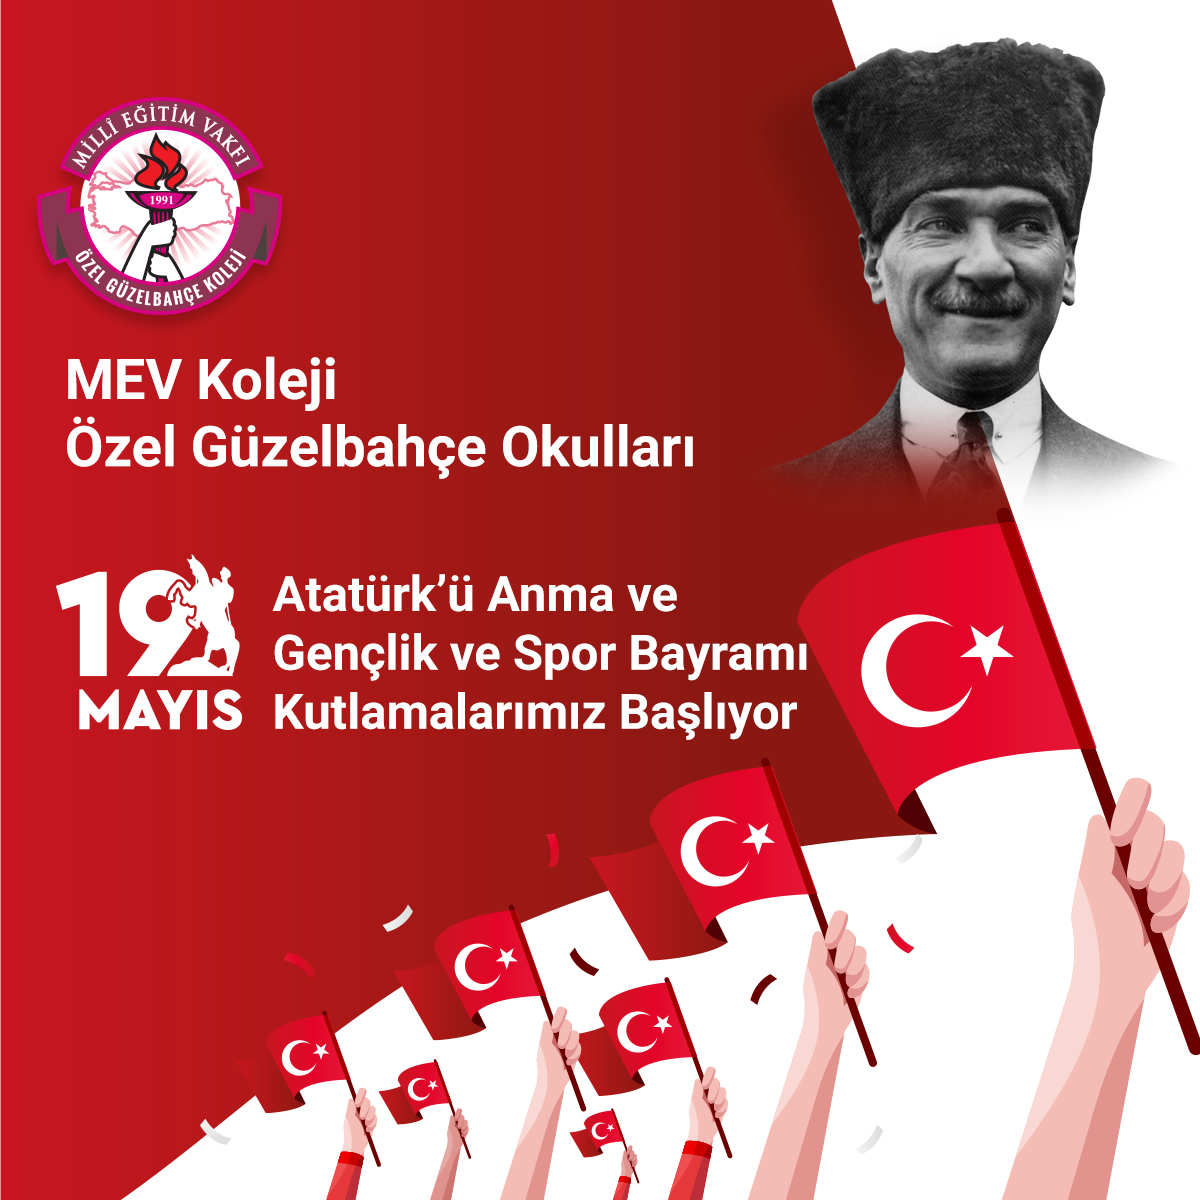 19 Mayıs Atatürk’ü Anma ve Gençlik ve Spor Bayramı Kutlama Programı